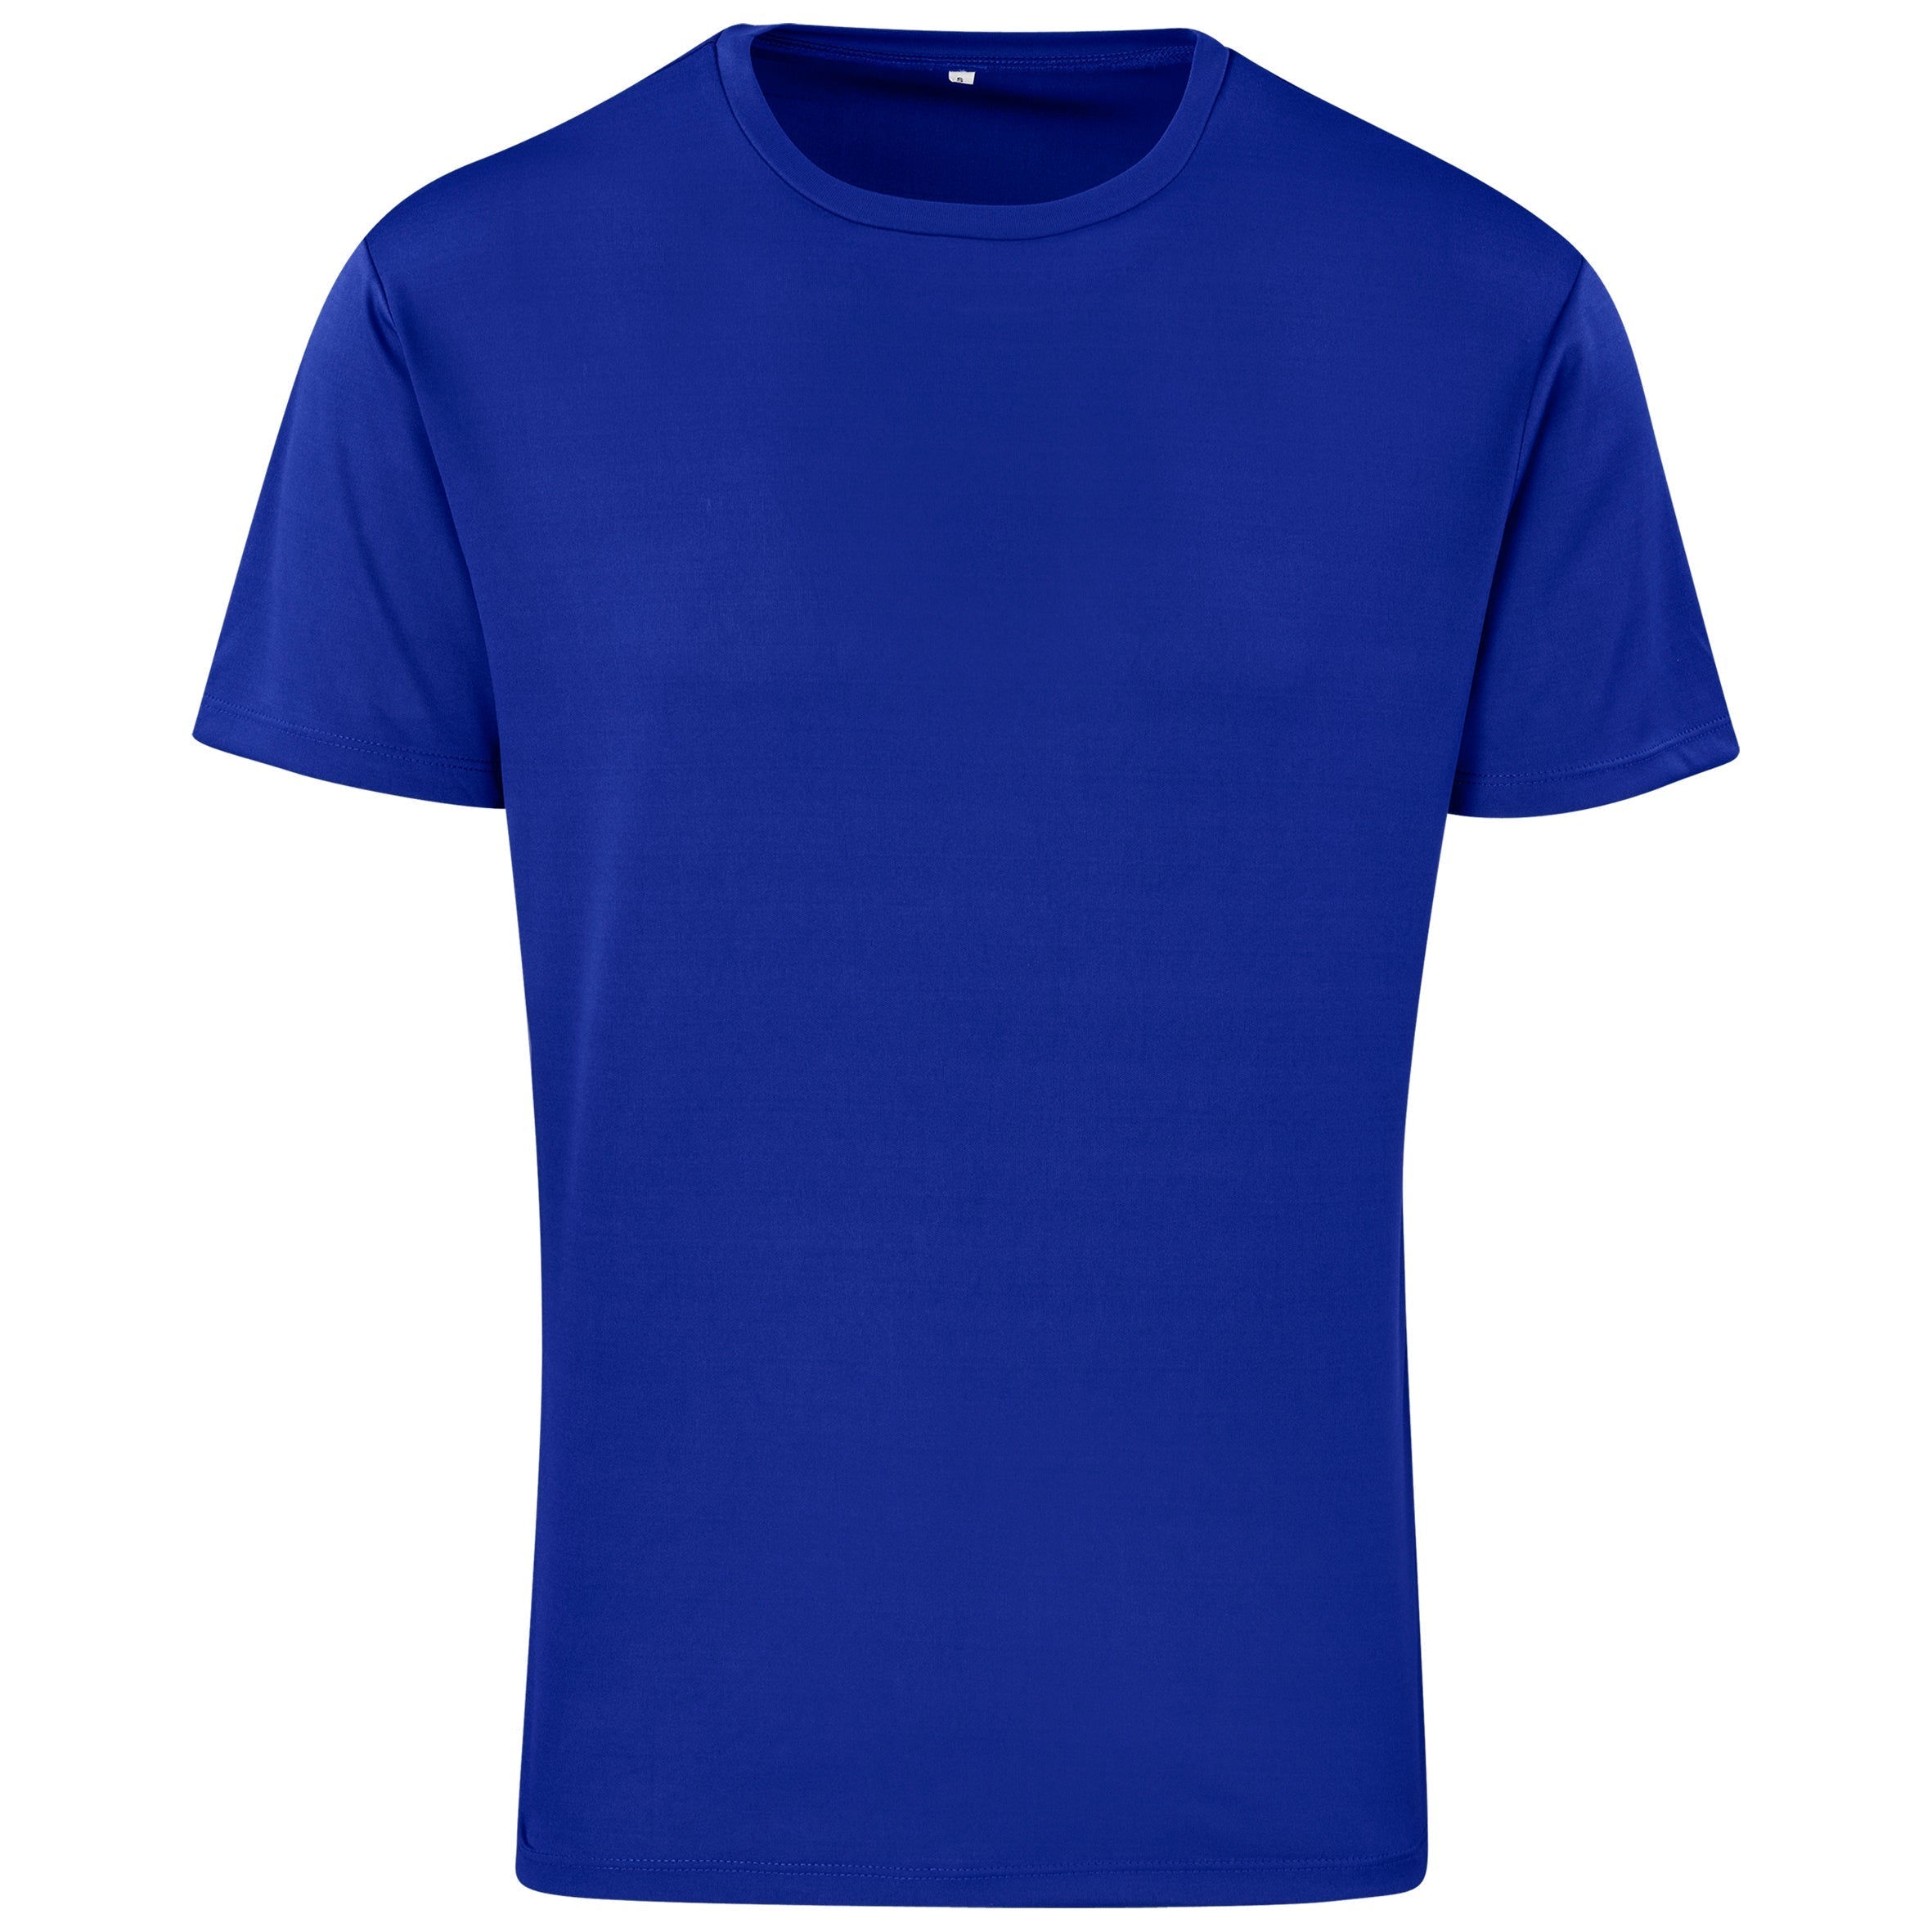 Unisex Activ T-shirt-L-Royal Blue-RB